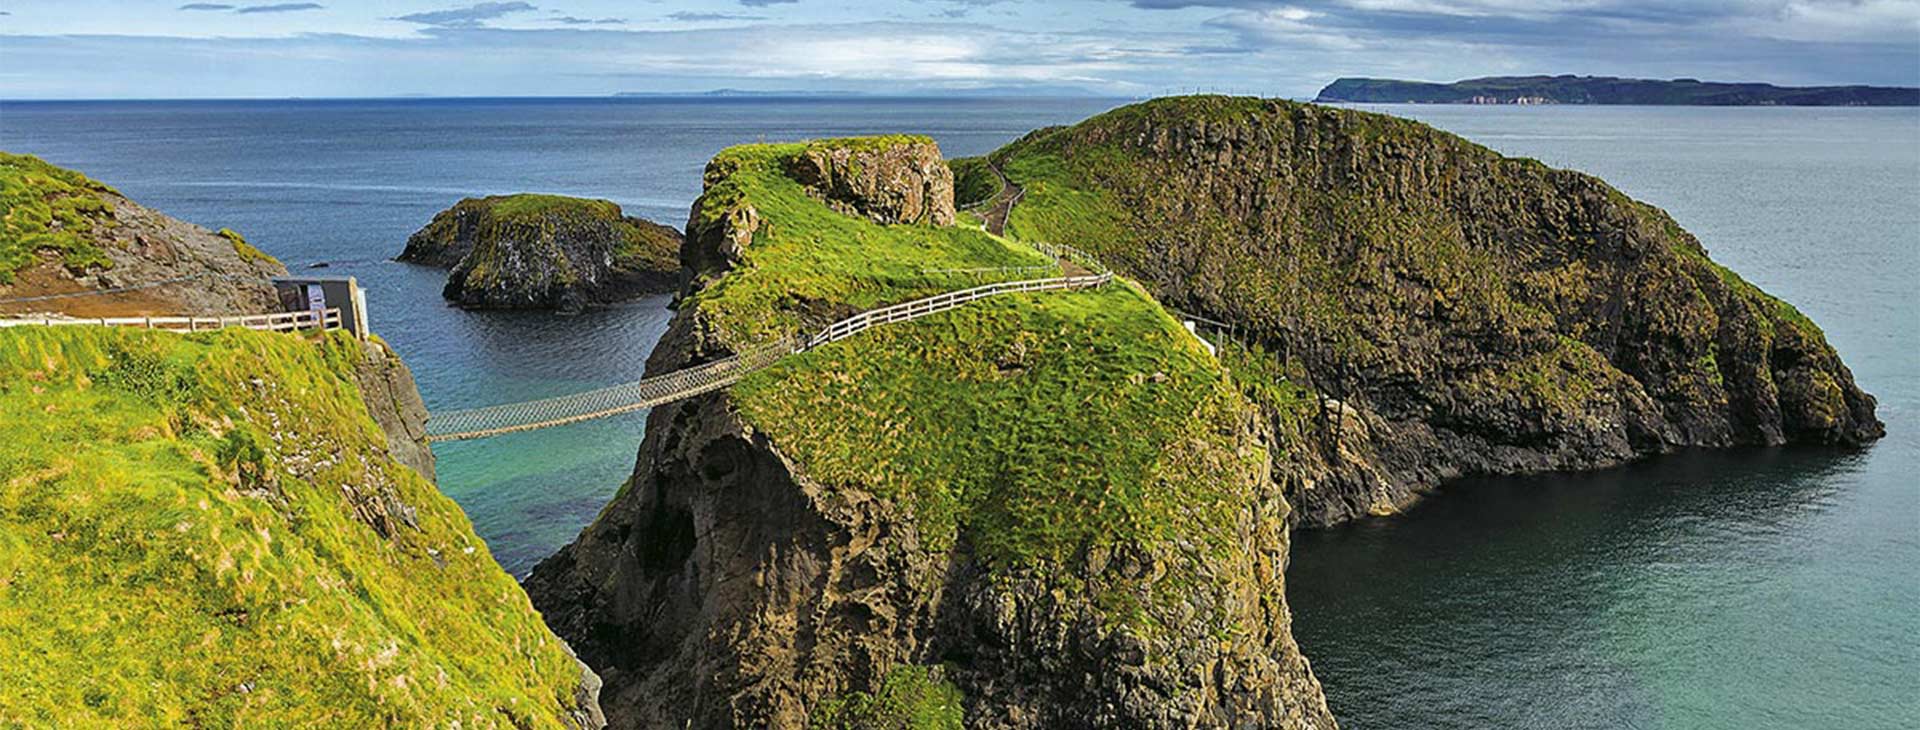 Irlandia i Irlandia Północna - legendy wykute w skałach